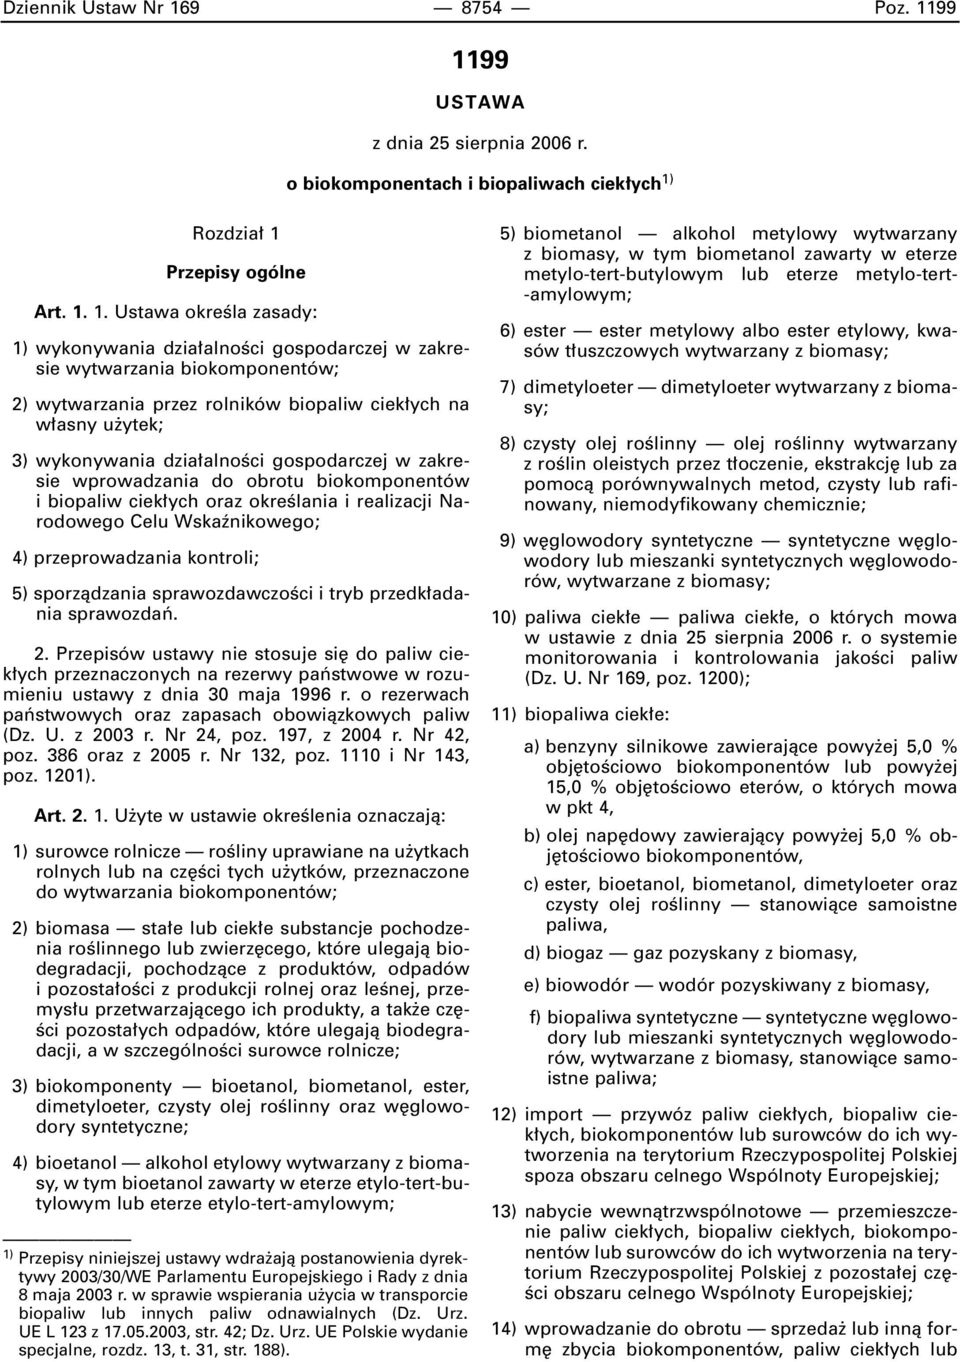 99 1199 USTAWA z dnia 25 sierpnia 2006 r. o biokomponentach i biopaliwach ciek ych 1) Rozdzia 1 Przepisy ogólne Art. 1. 1. Ustawa okreêla zasady: 1) wykonywania dzia alnoêci gospodarczej w zakresie